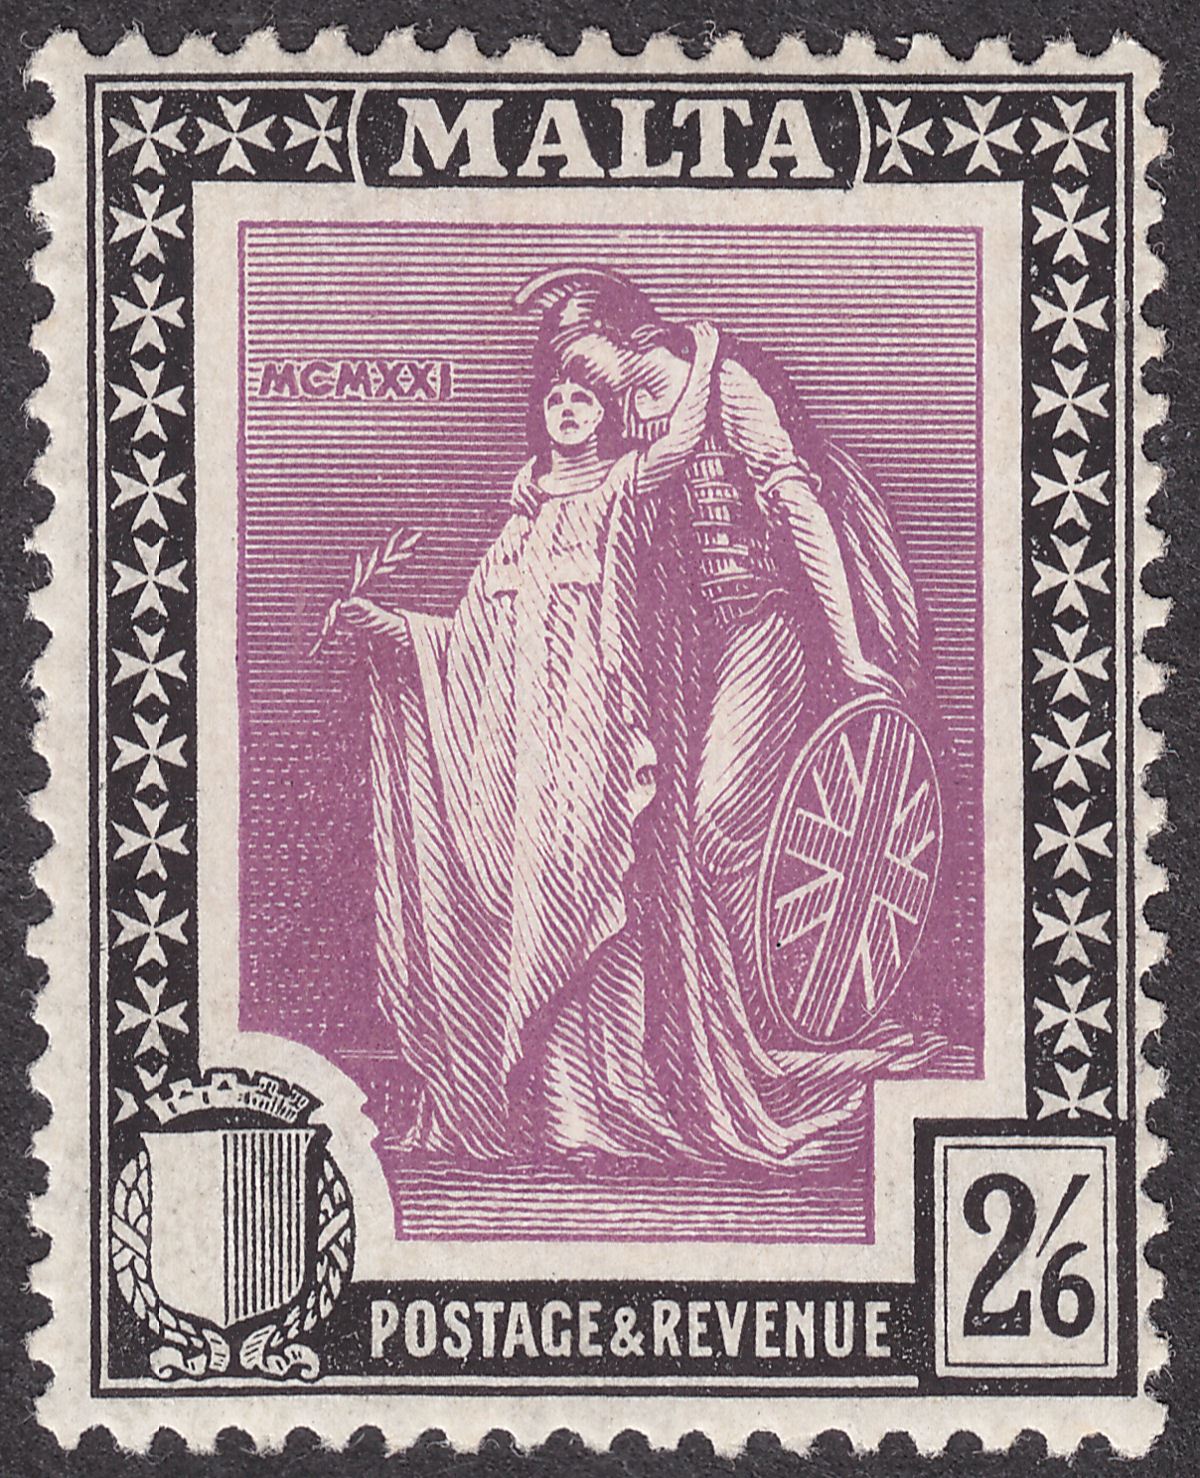 Malta 1922 KGV Figure 2sh6d Bright Magenta and Black Mint SG136 cat £13